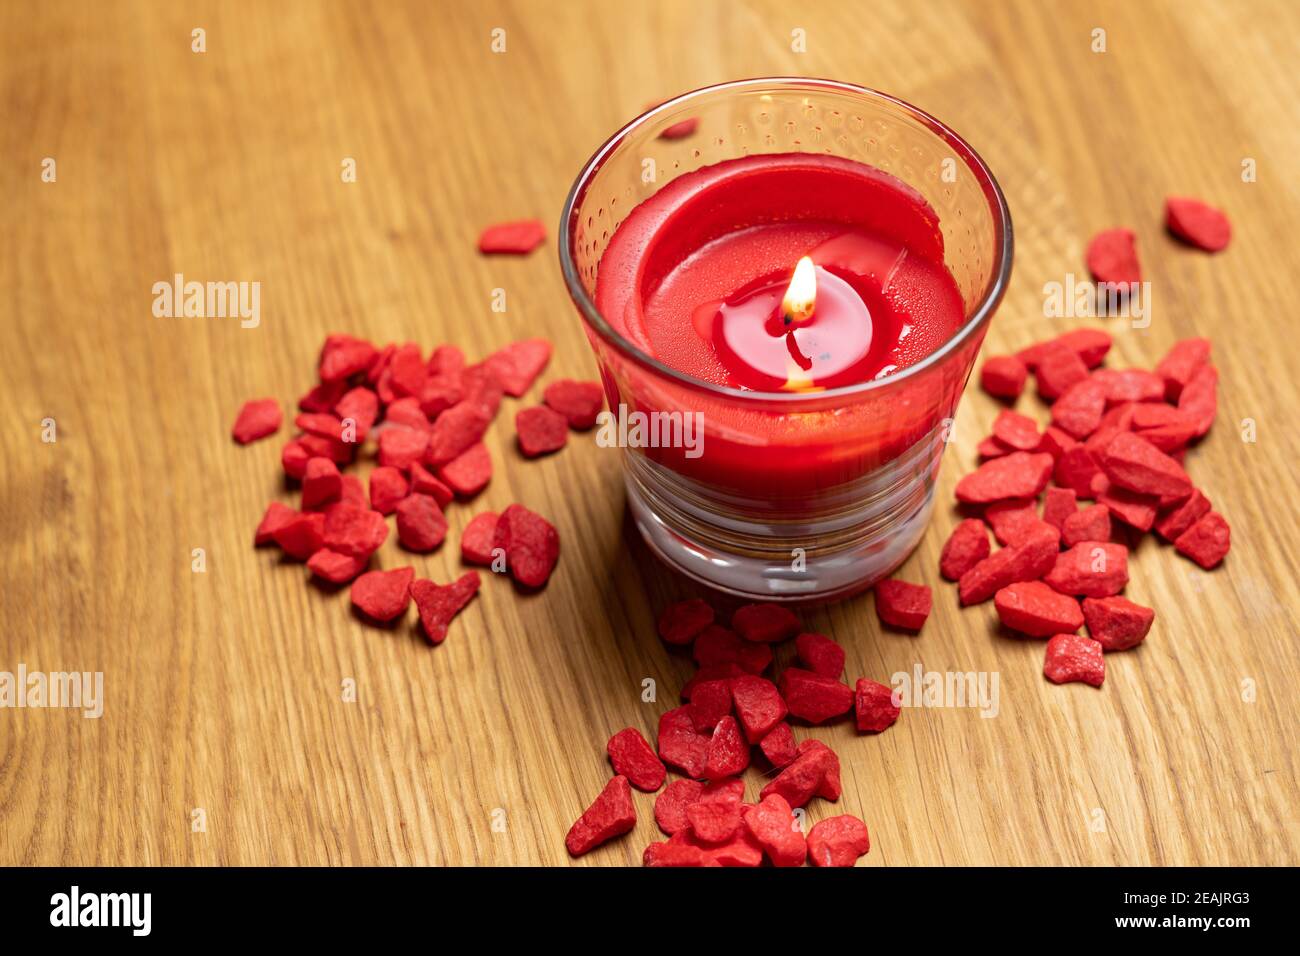 candela rossa bruciata su sfondo in legno. relax e benessere a casa e con benessere. concetto per un'atmosfera calda e confortevole Foto Stock